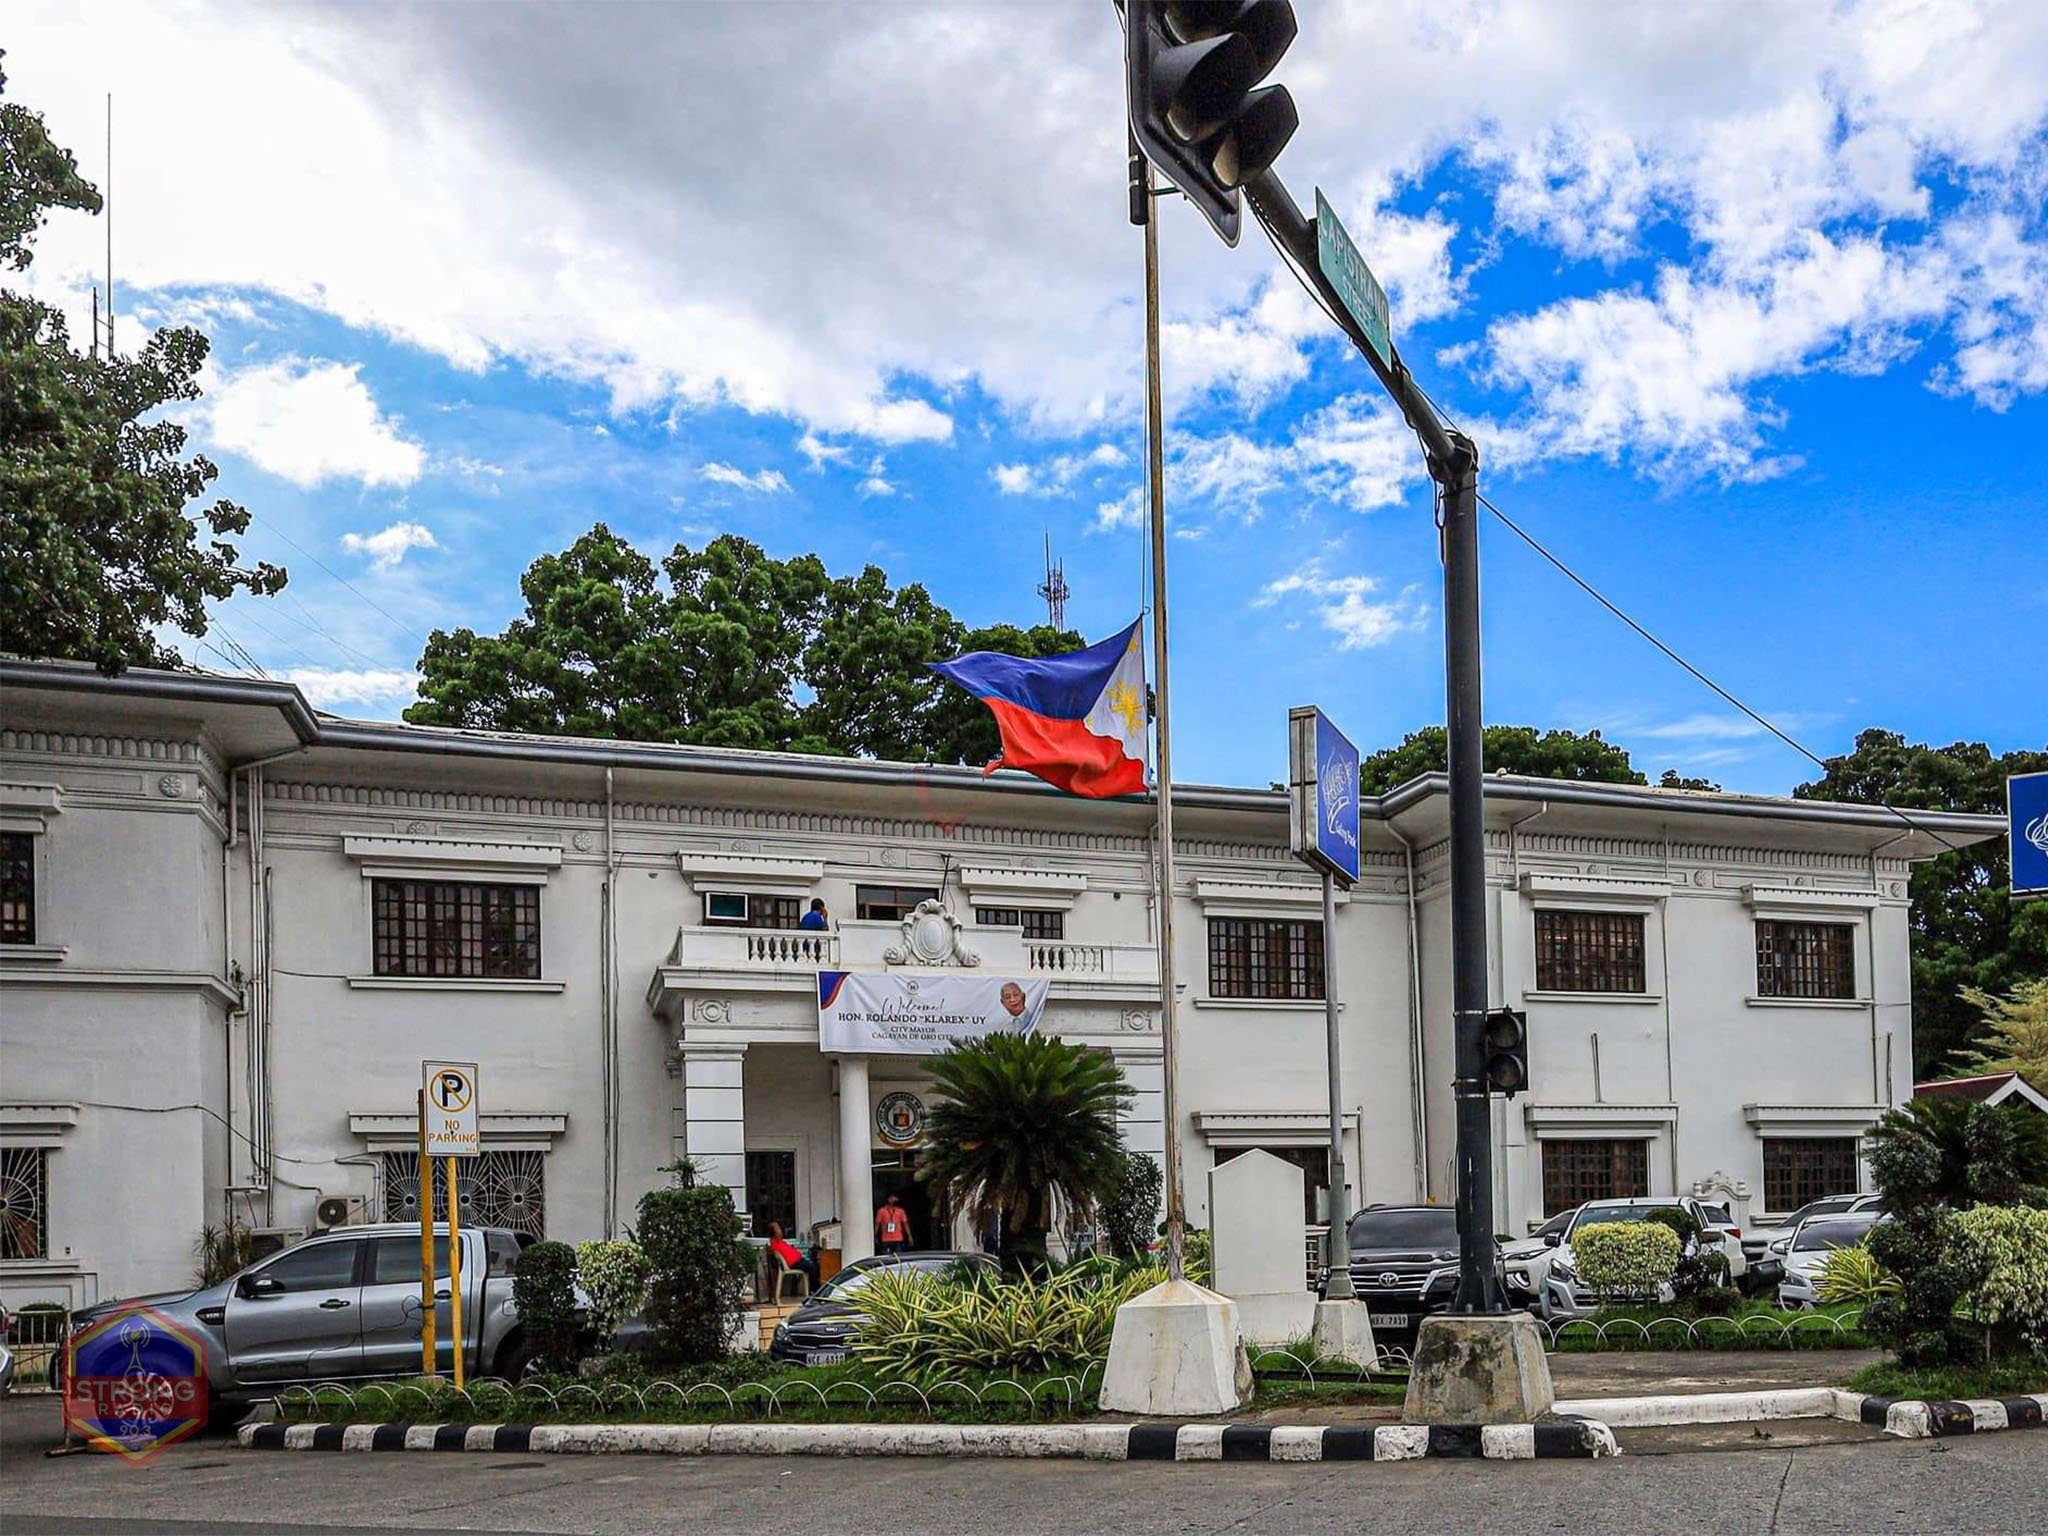 Flag flies half-mast as Cagayan de Oro mourns ex-mayor Canoy’s death